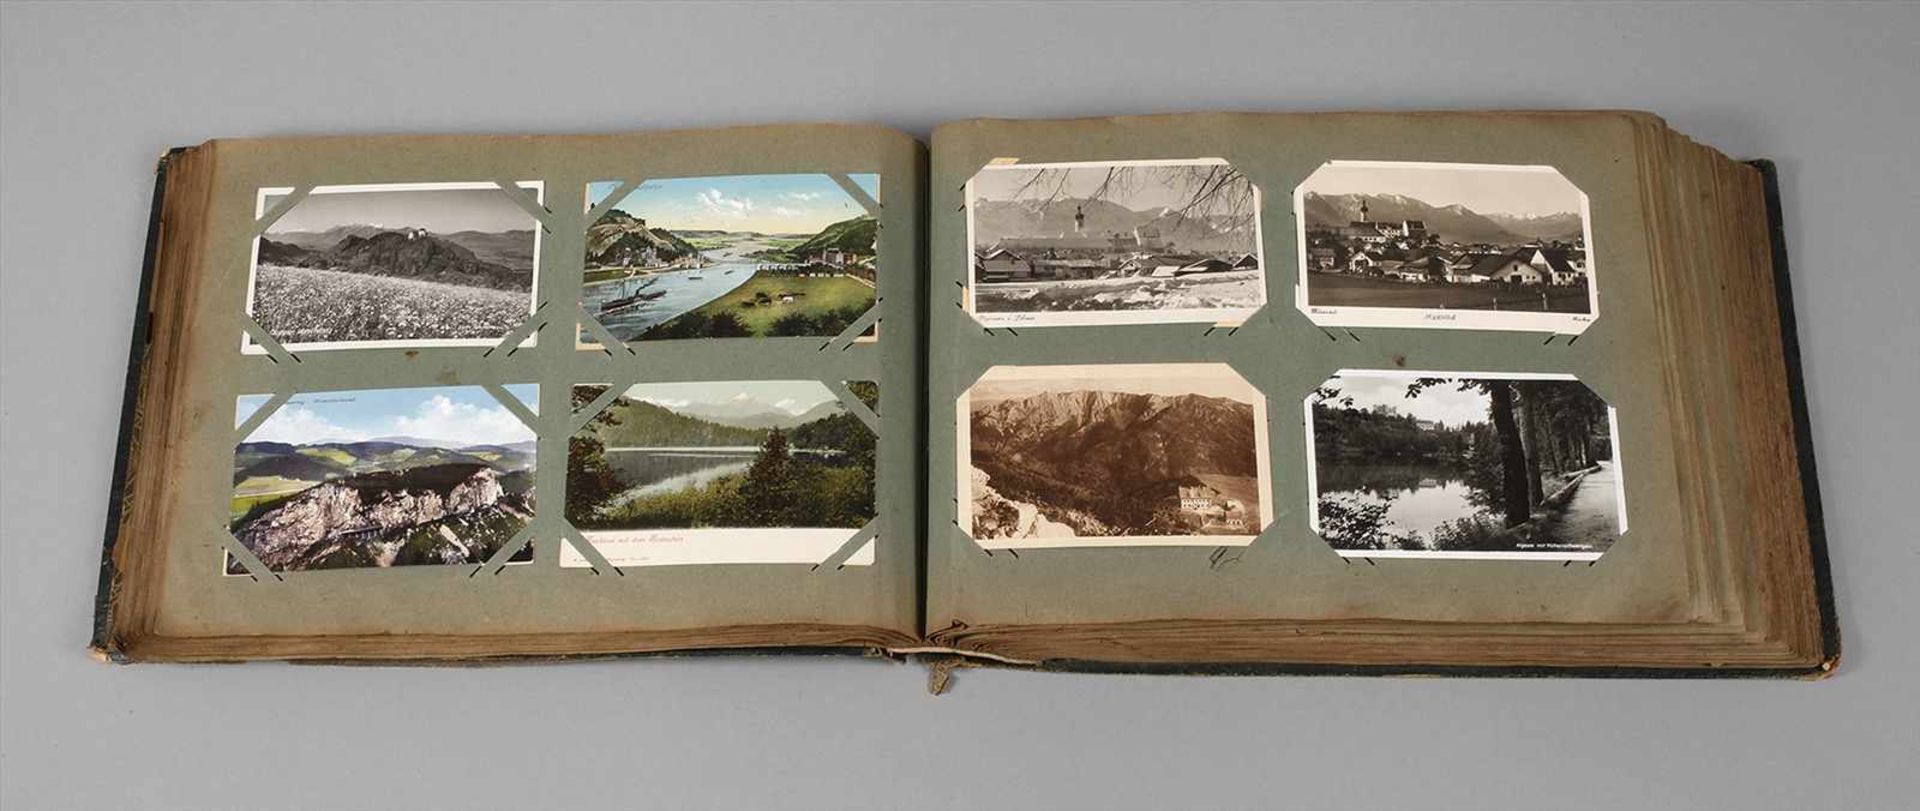 Ansichtskartenalbum West- und Süddeutschlandund Alpen, um 1910 bis vor 1945, ca. 510 vorwiegend